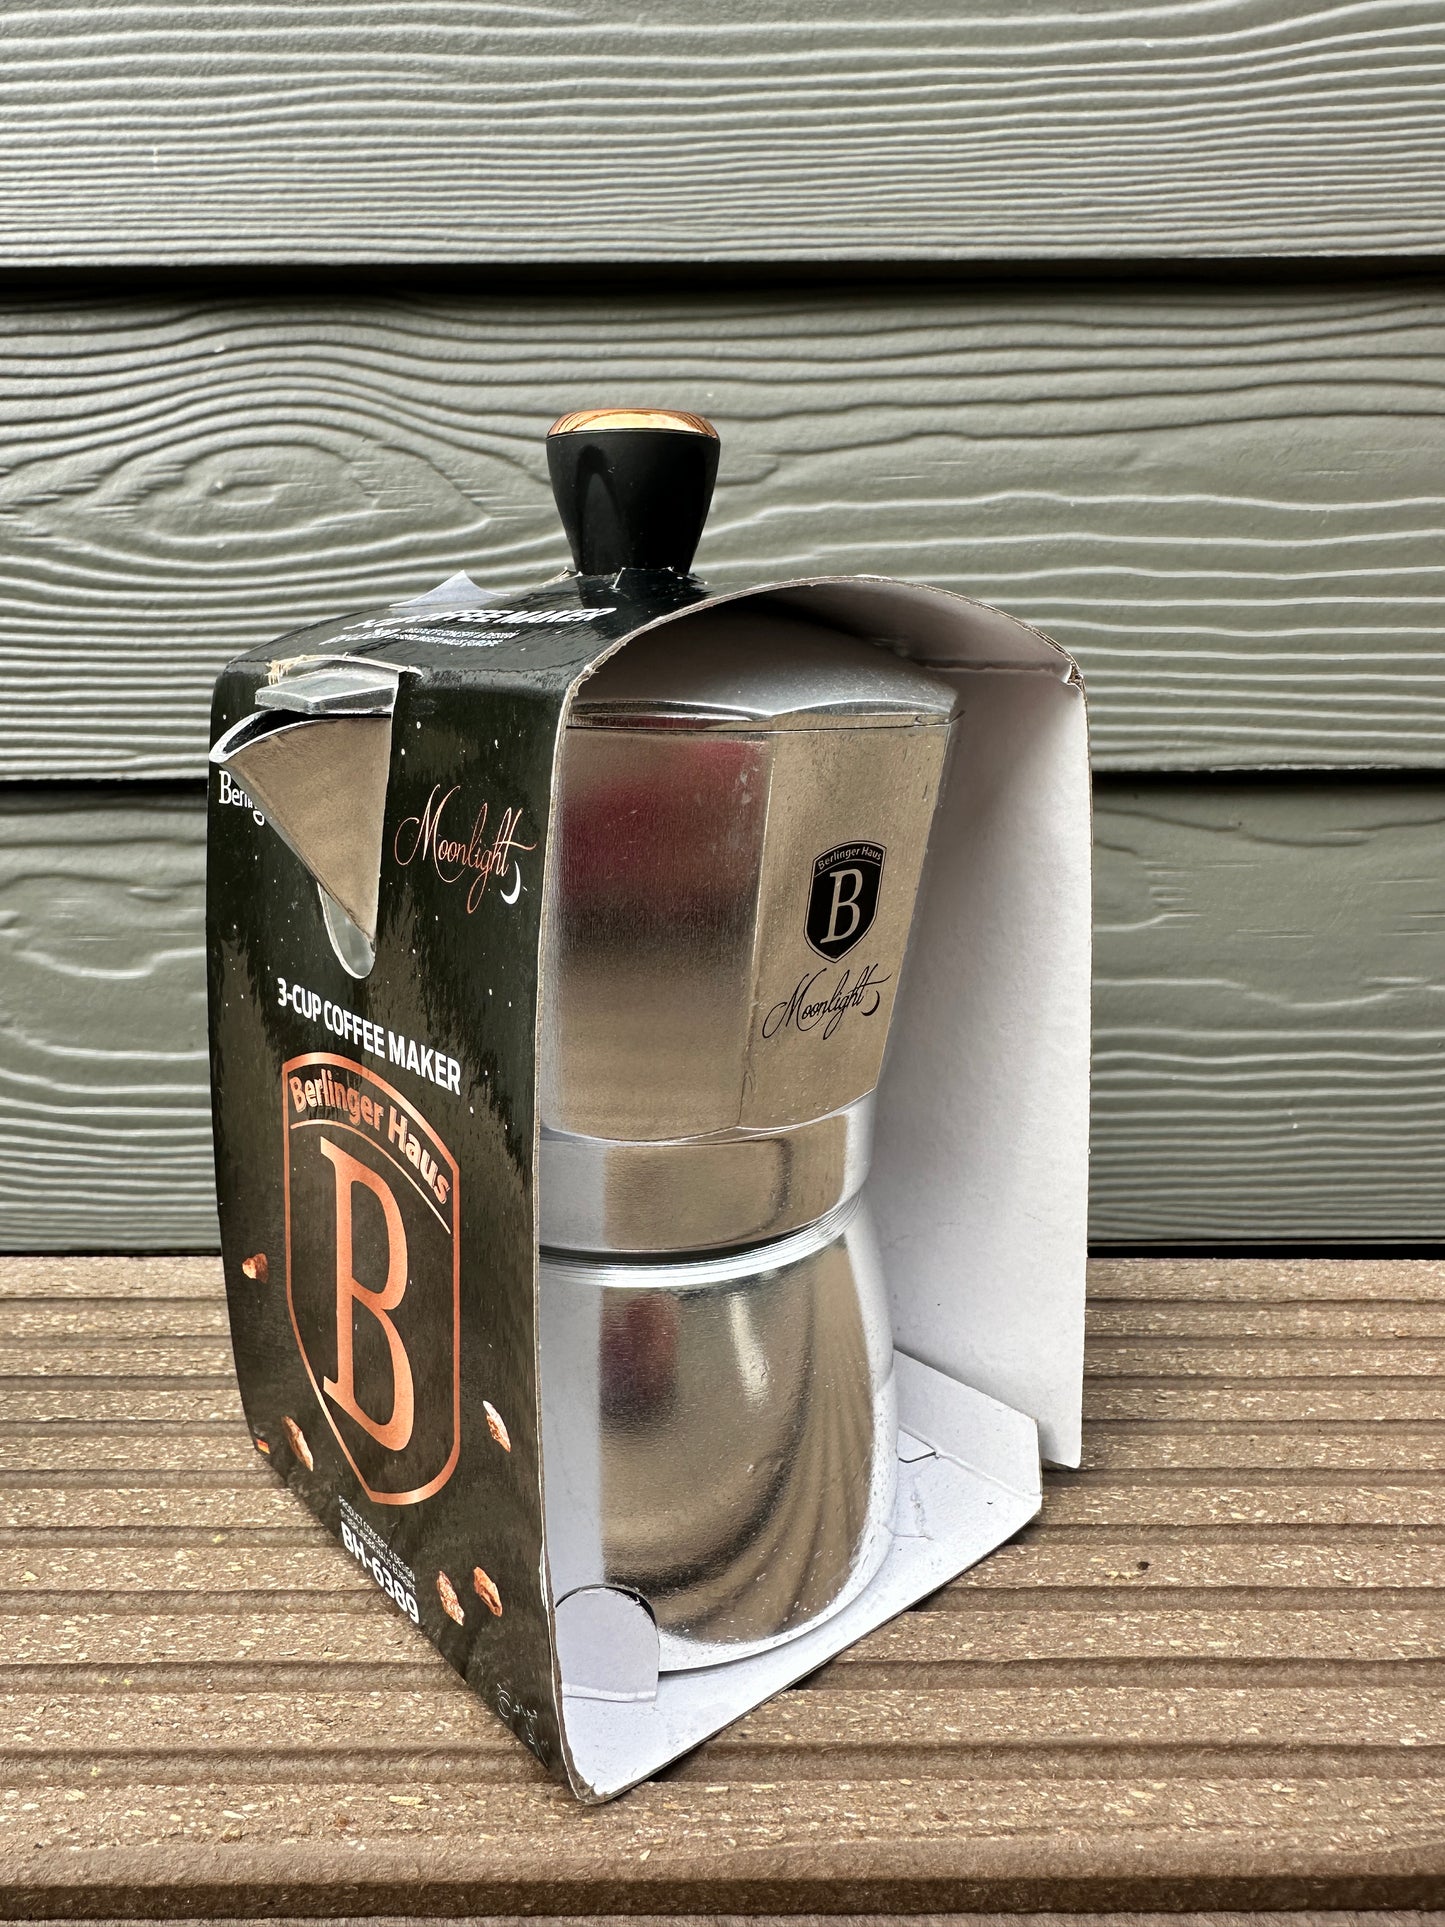 3-Cup coffee maker Berlinger Haus